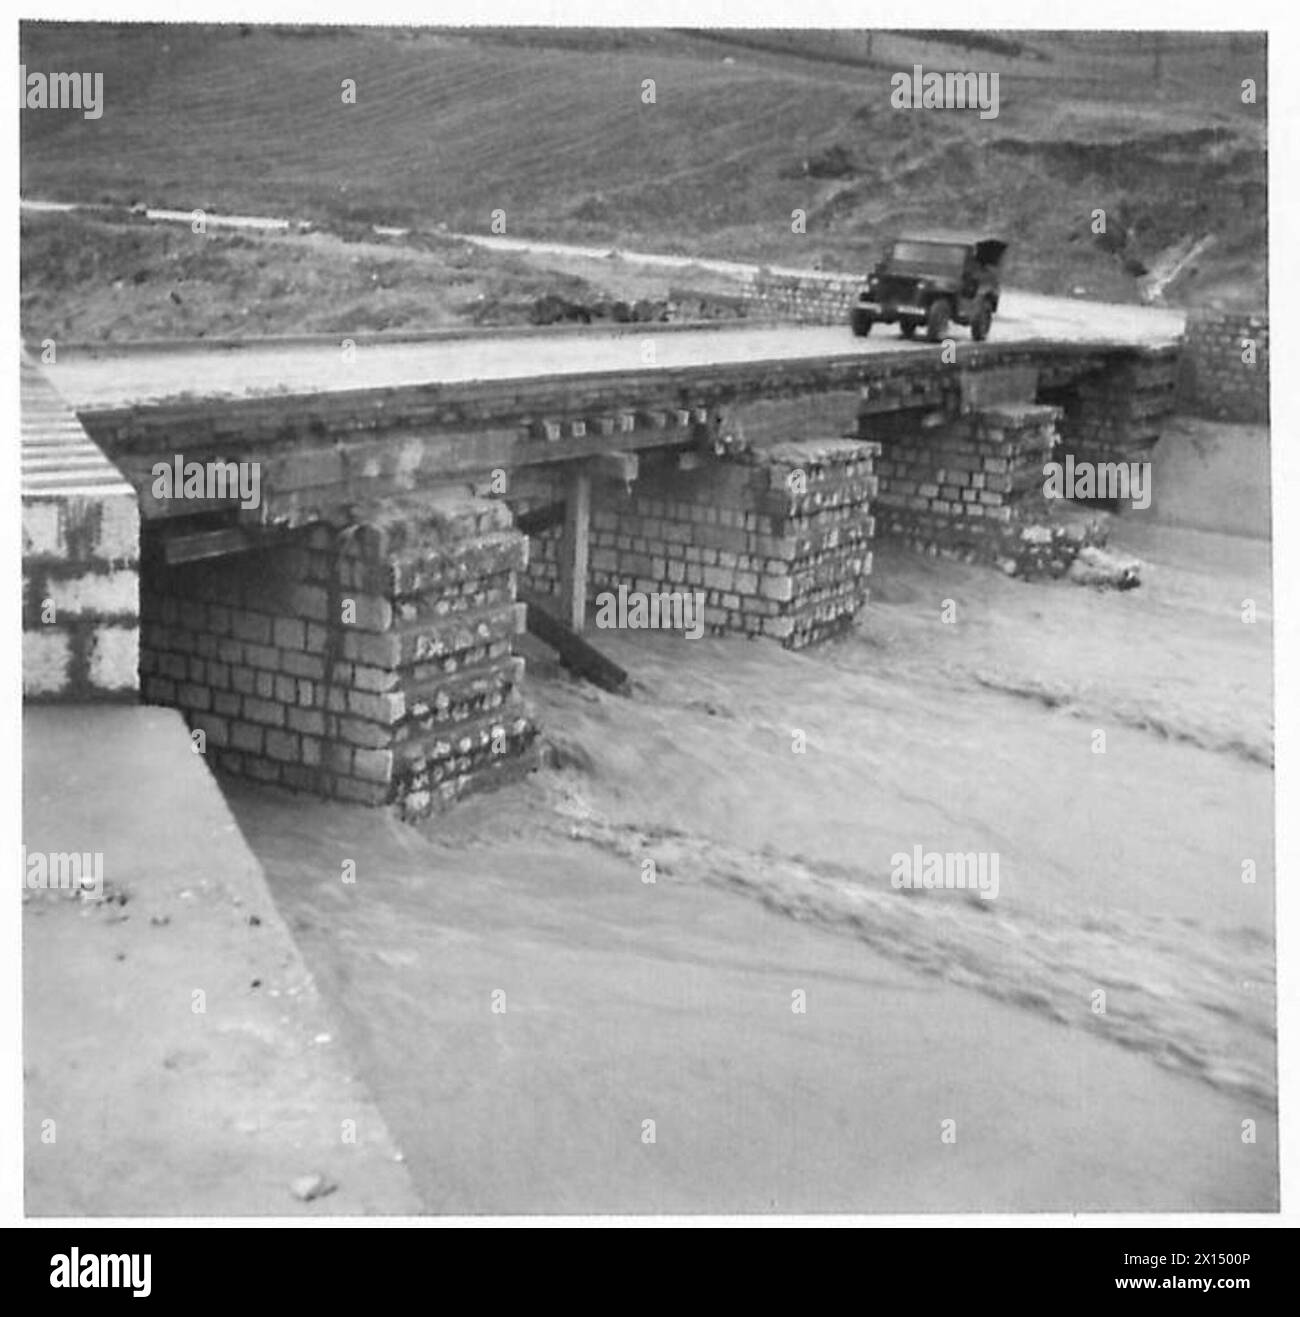 ITALIEN: HERBSTFLUTEN VERURSACHEN STRASSENSCHÄDEN - Route 90 bei Grottanminarda, M.R. N.884769. Cl.70 provisorische Brücke, gebaut, um Hochwasser am „Engpass“-Standort am Fluss Ufila standzuhalten. Maximale Hochwasserstände haben gerade die Brücke der Britischen Armee überdeckt Stockfoto